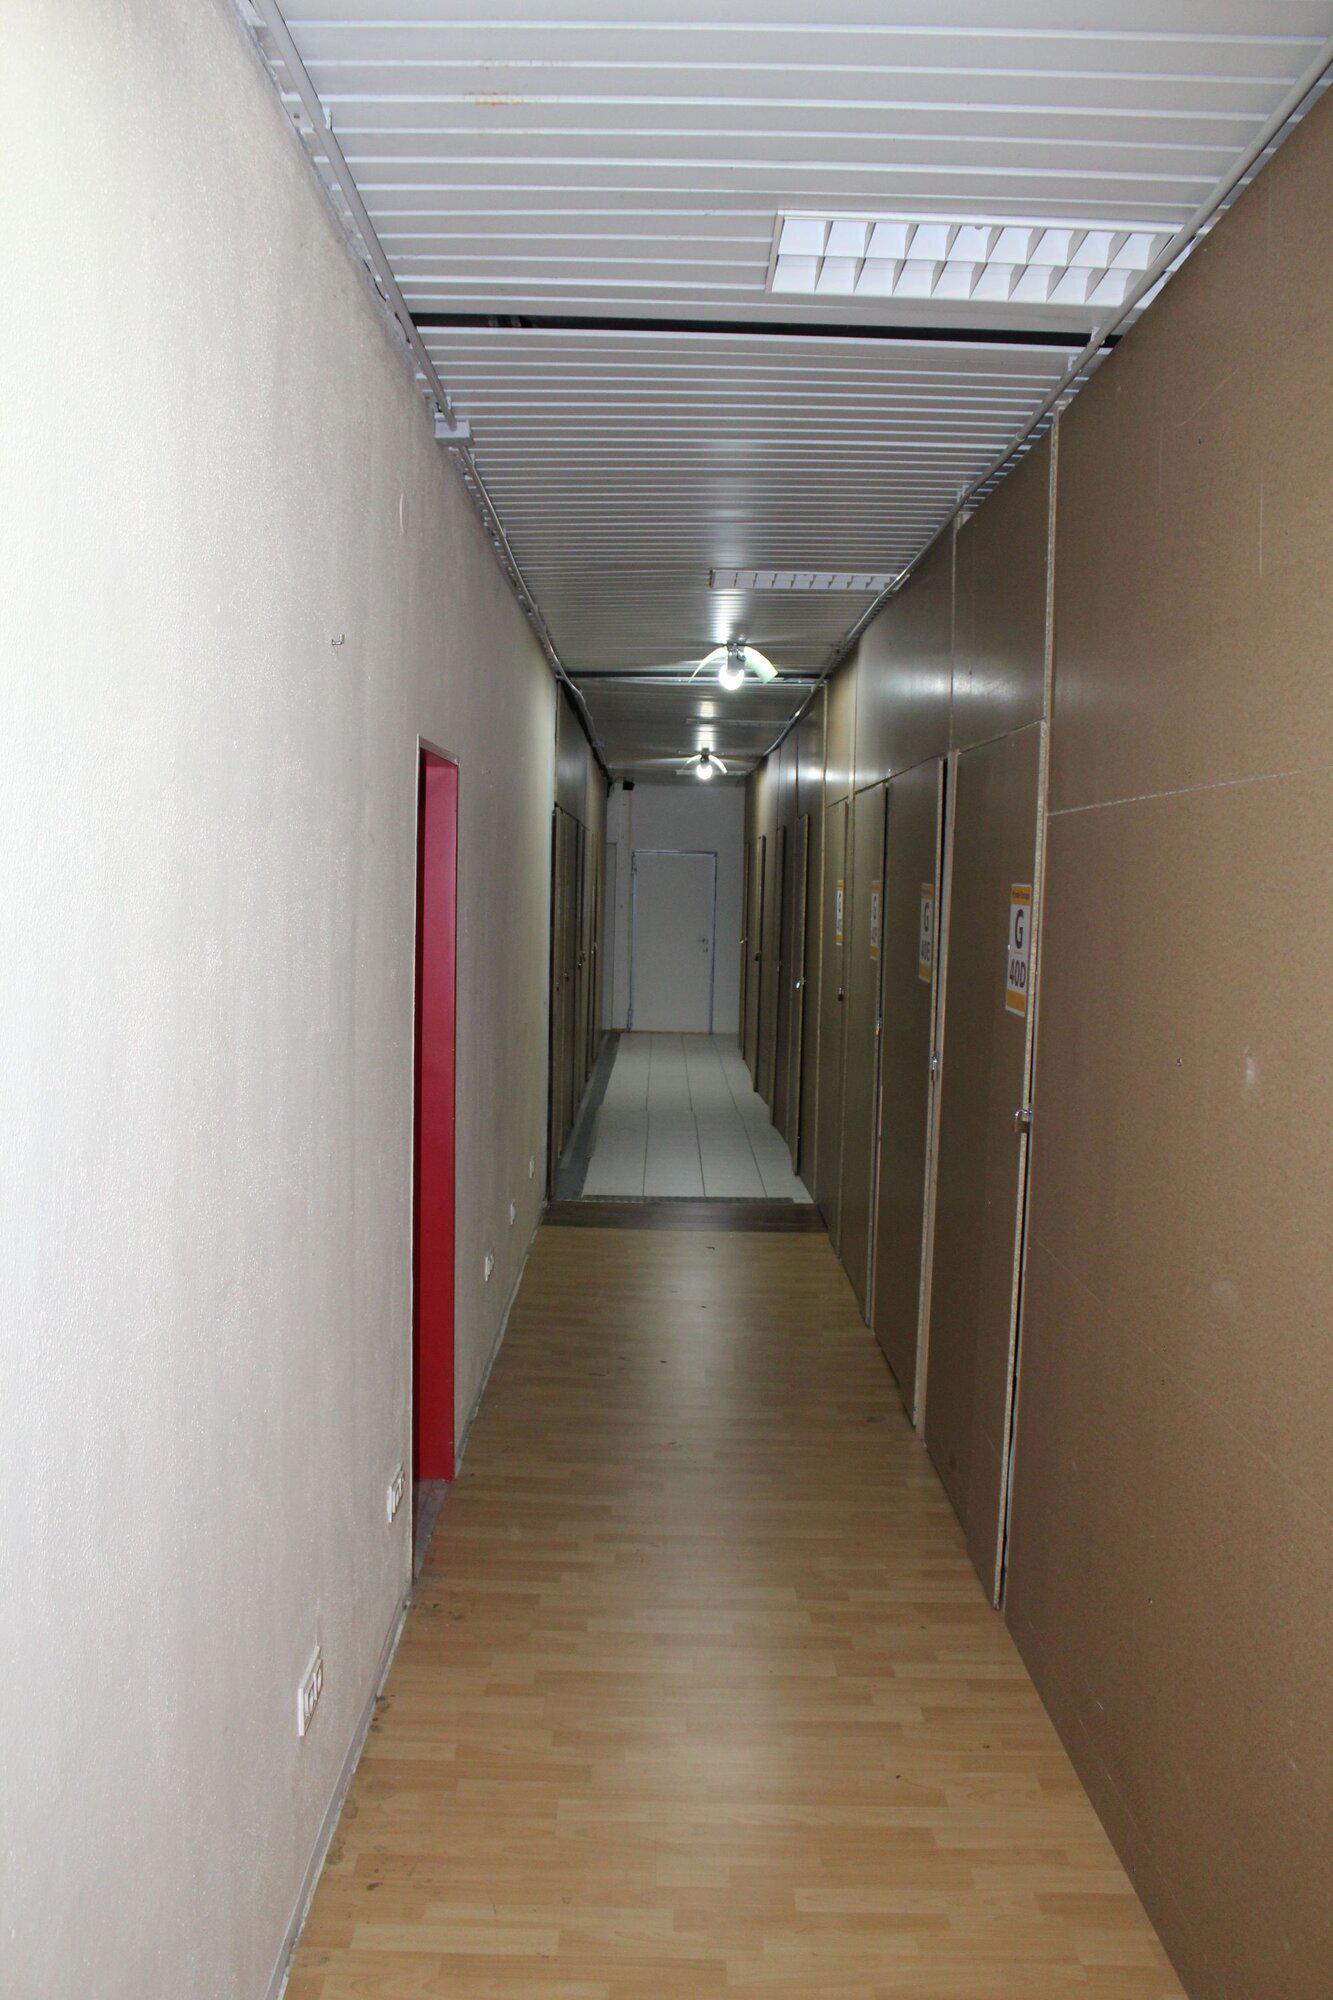 Bilder Private Storage Möbel einlagern - 3 x in Karlsruhe - Akten, Möbel etc. auf Zeit einlagern